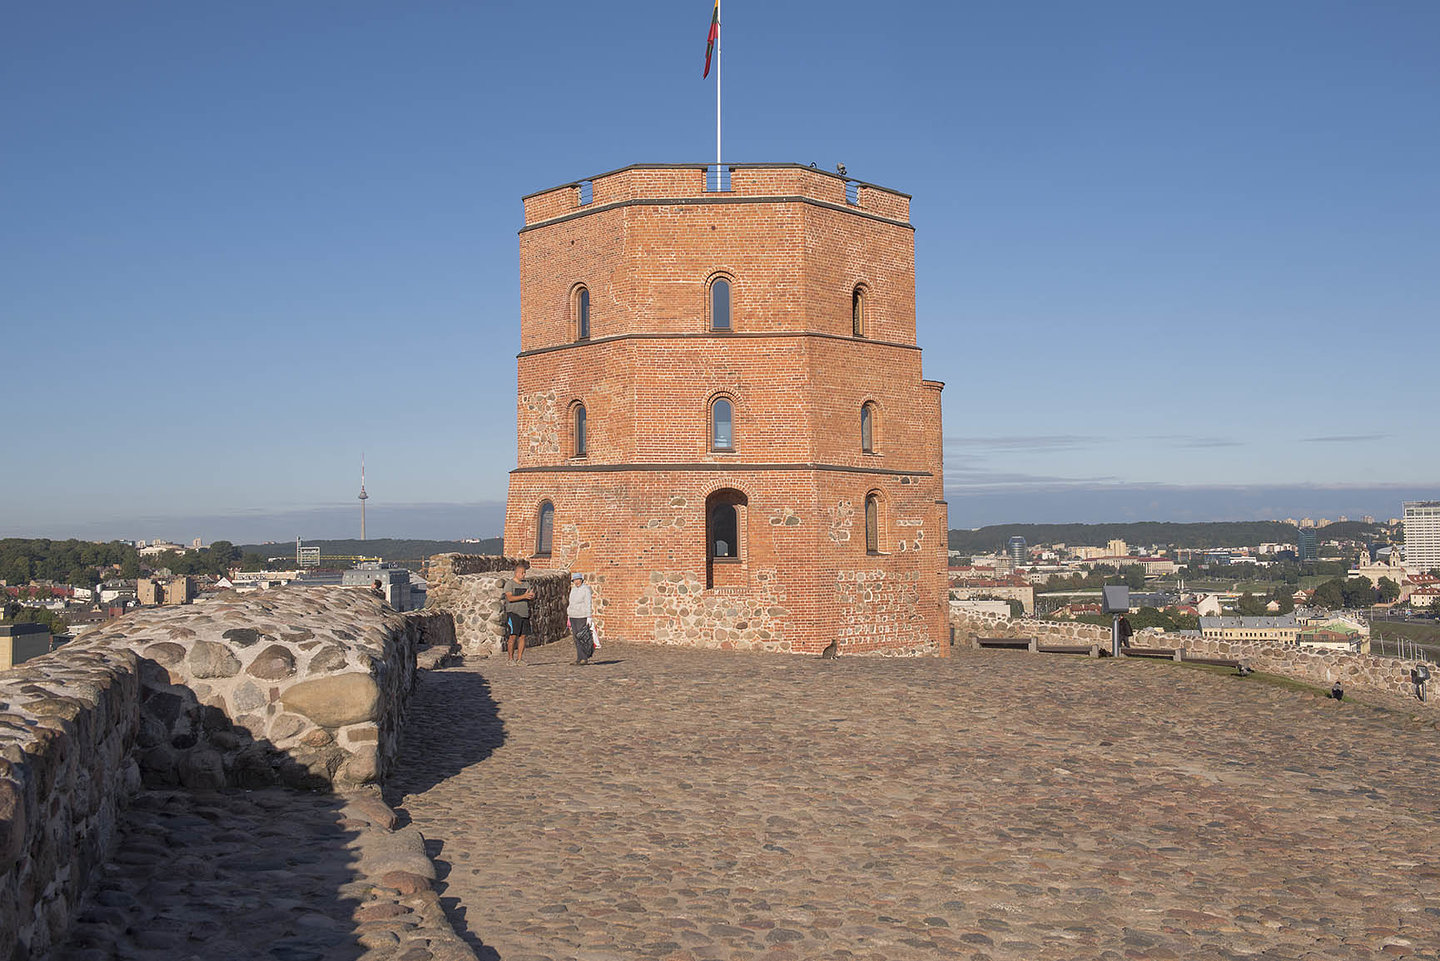 Gediminas Tower